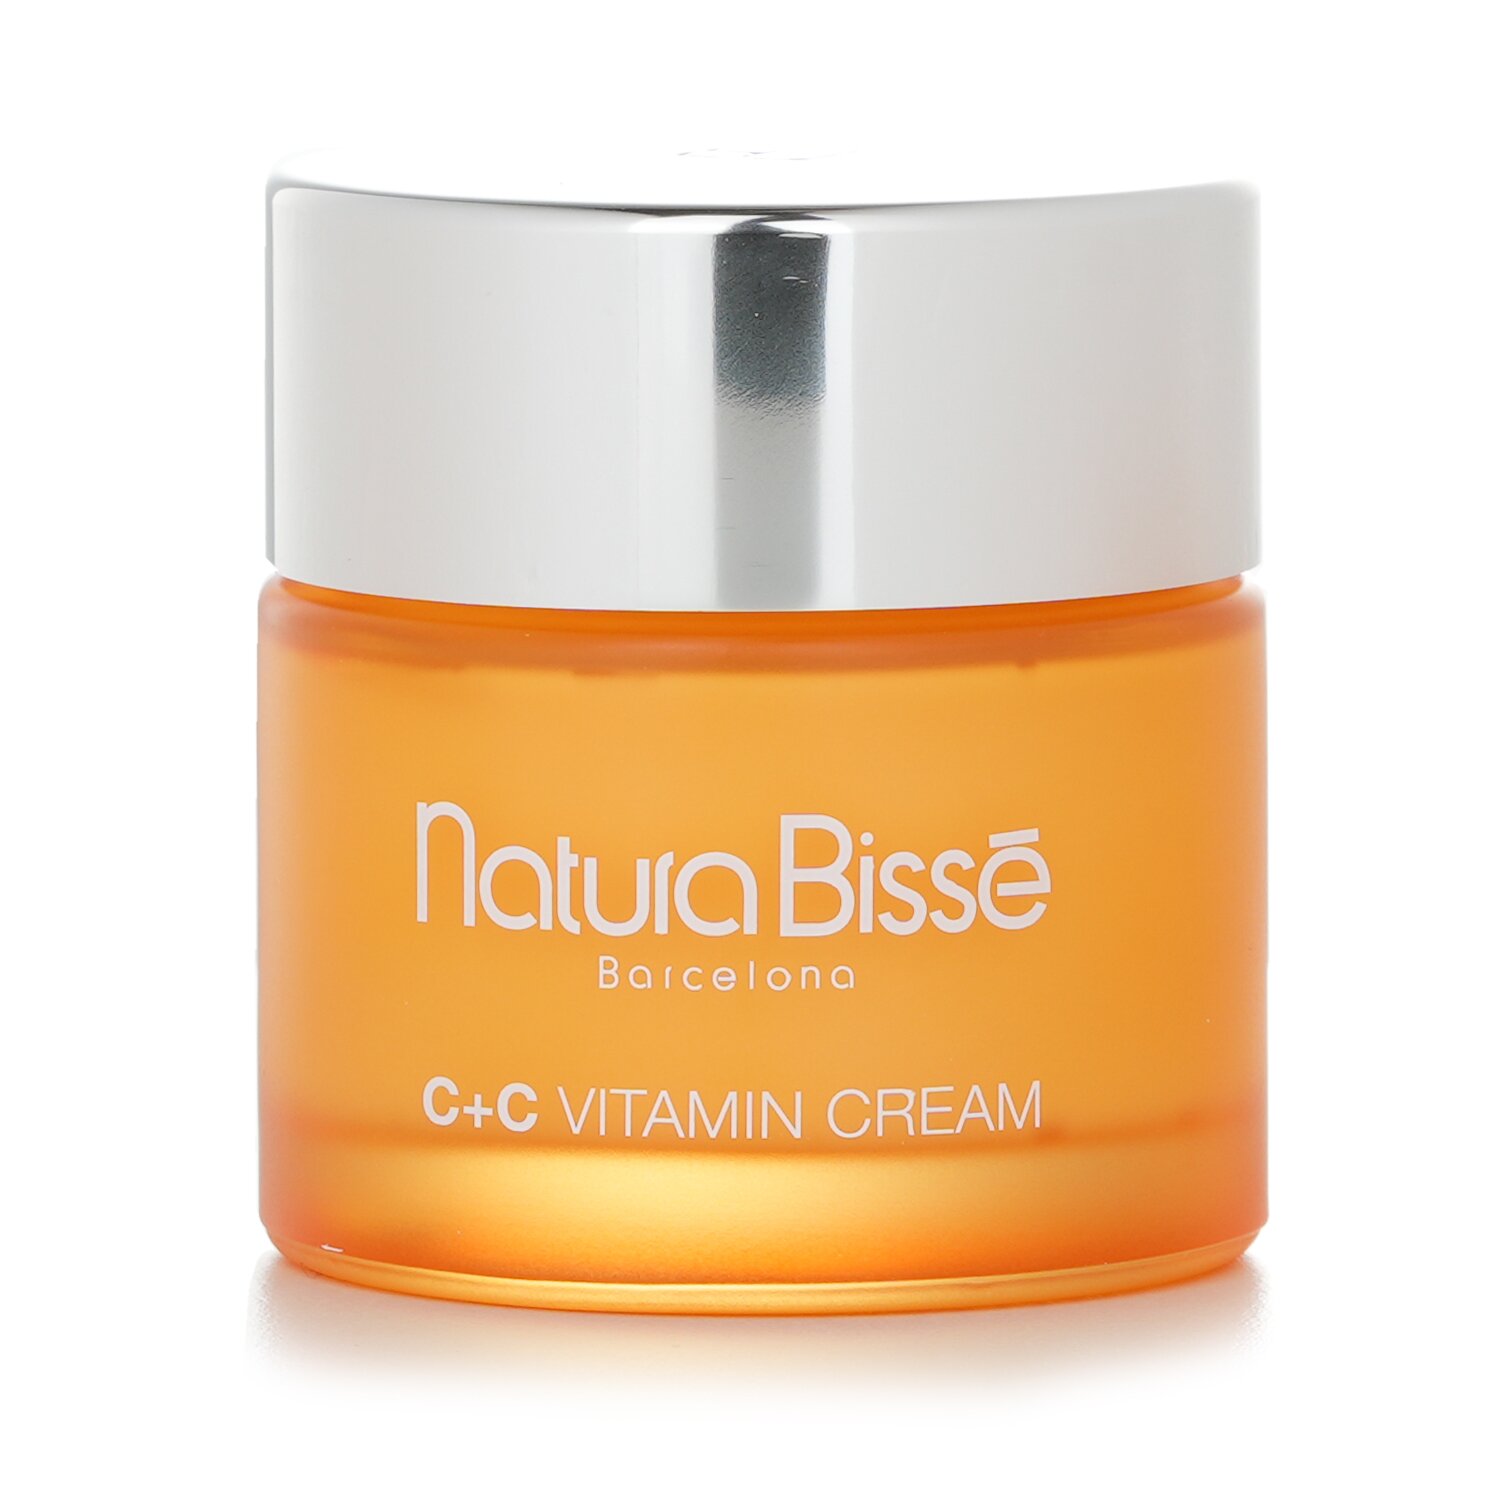 娜圖比索 Natura Bisse - 維他命C+C乳霜-中性至乾燥肌膚適用C+C Vitamin Cream - For Normal To Dry Skin